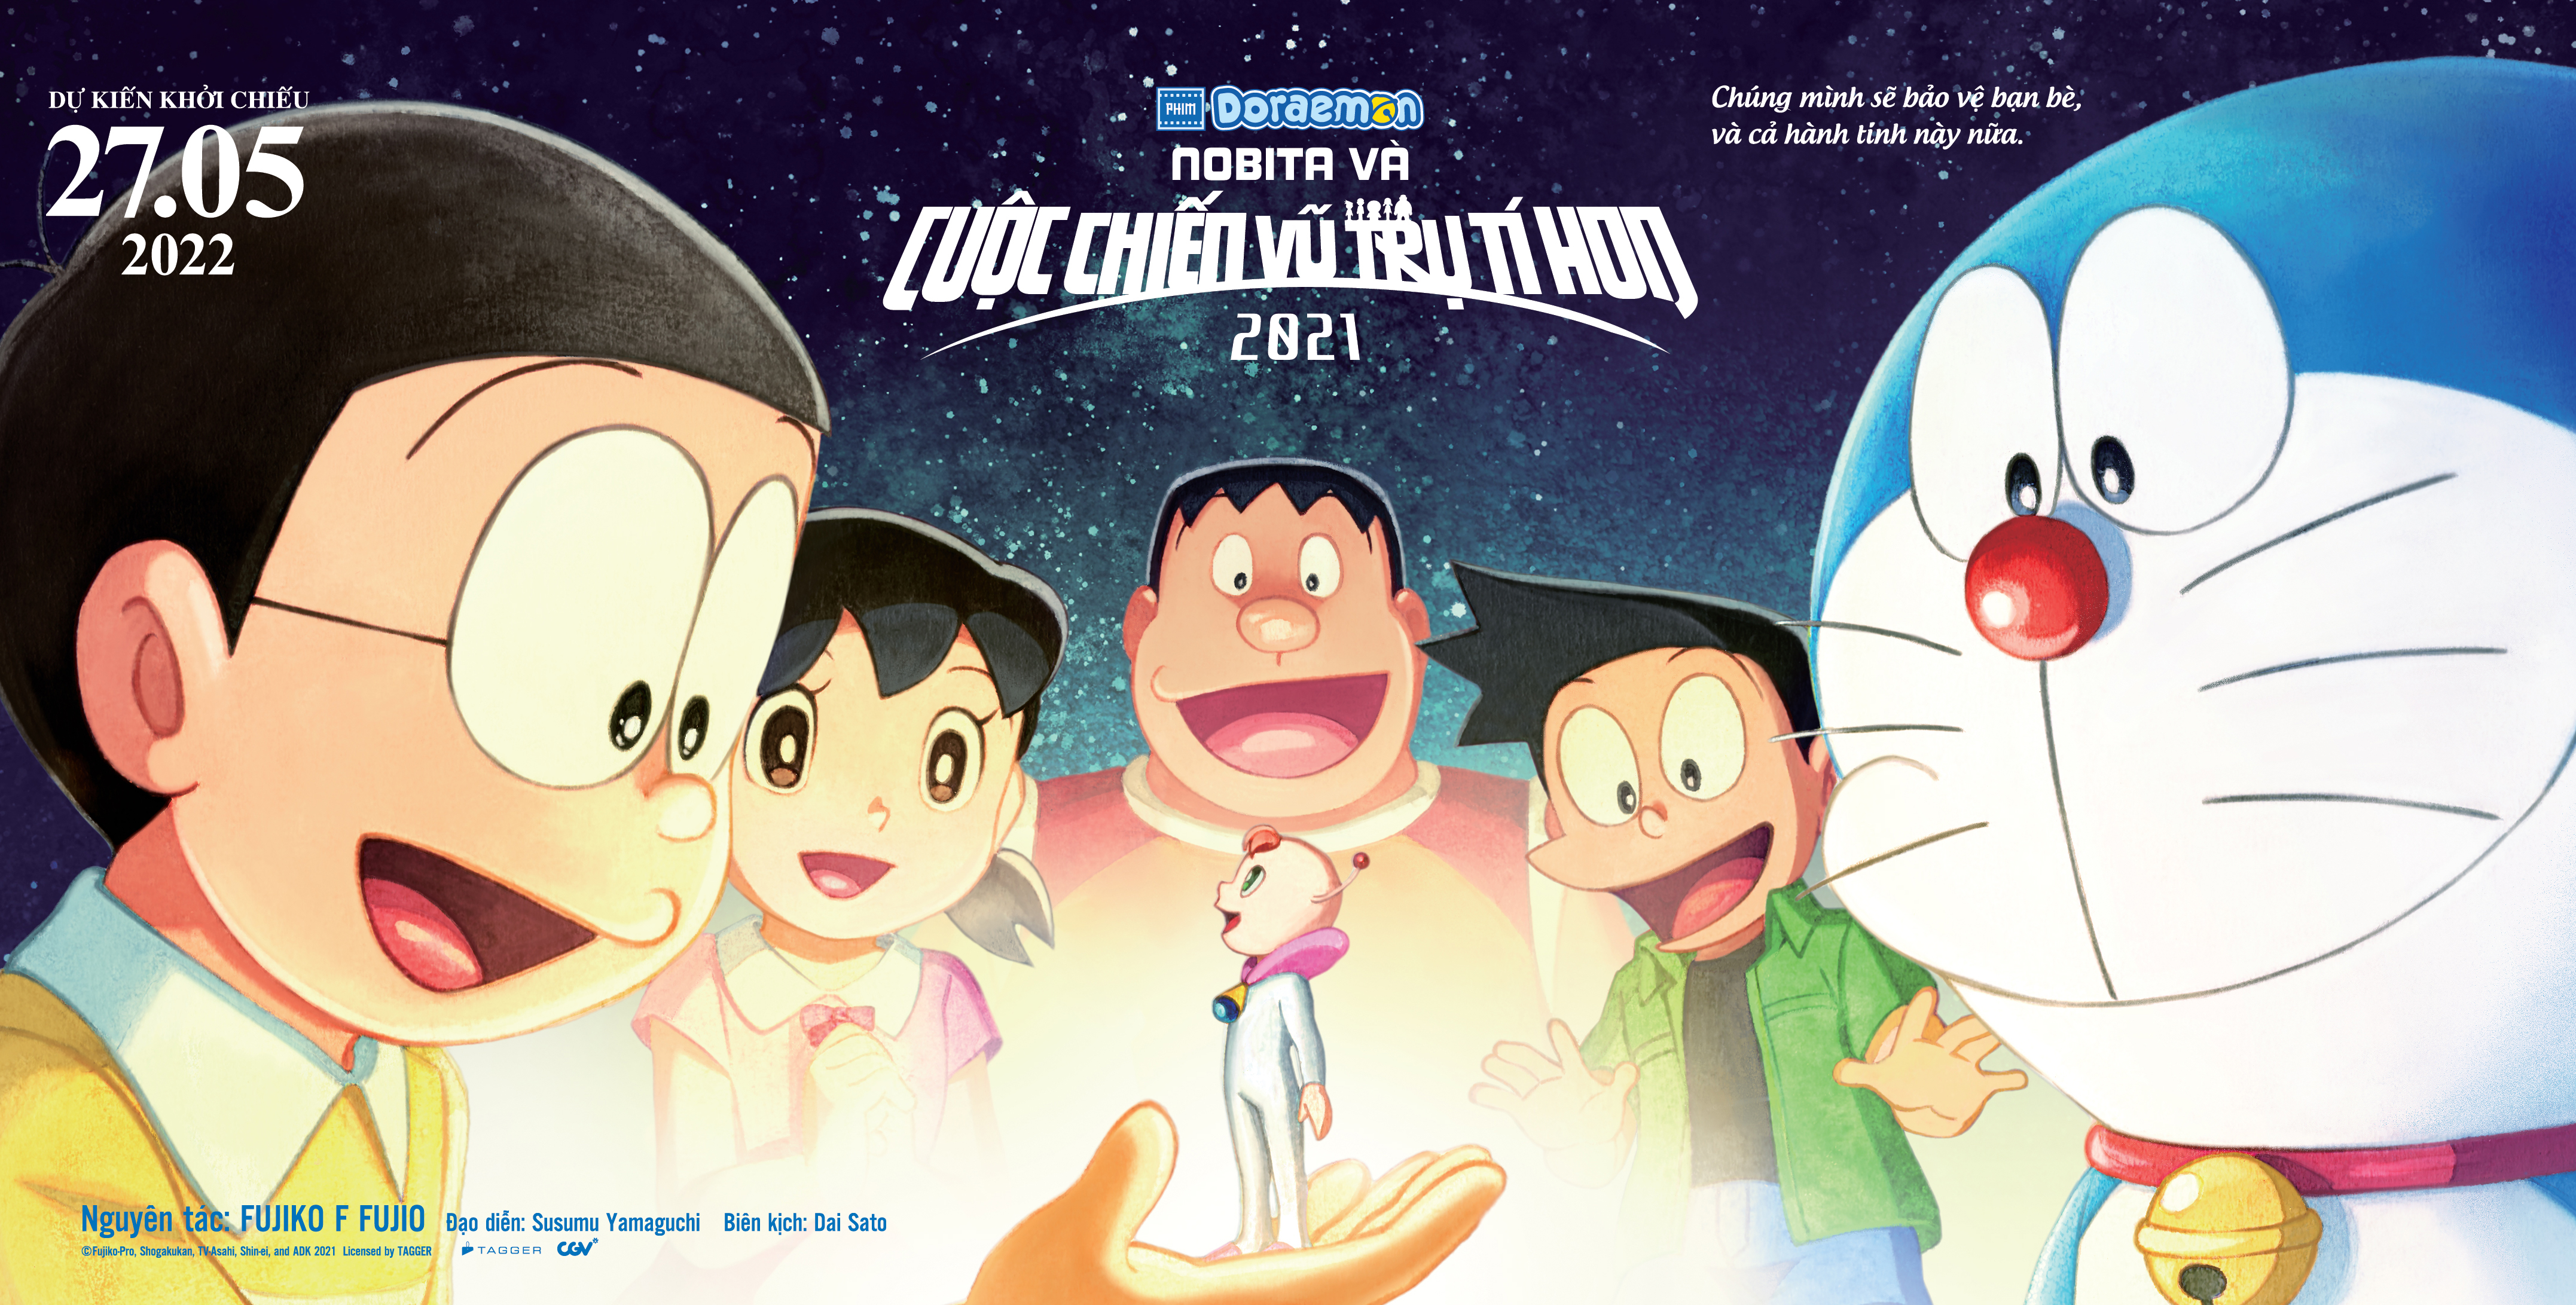 Doraemon, phim điện ảnh rất được yêu thích trên toàn thế giới. Những cảnh quay và hình ảnh reo hò đầy màu sắc chắc chắn sẽ làm bạn cười đến nỗi không ngớt. Hãy cùng xem và thưởng thức những phút giây thư giãn đầy vui vẻ!